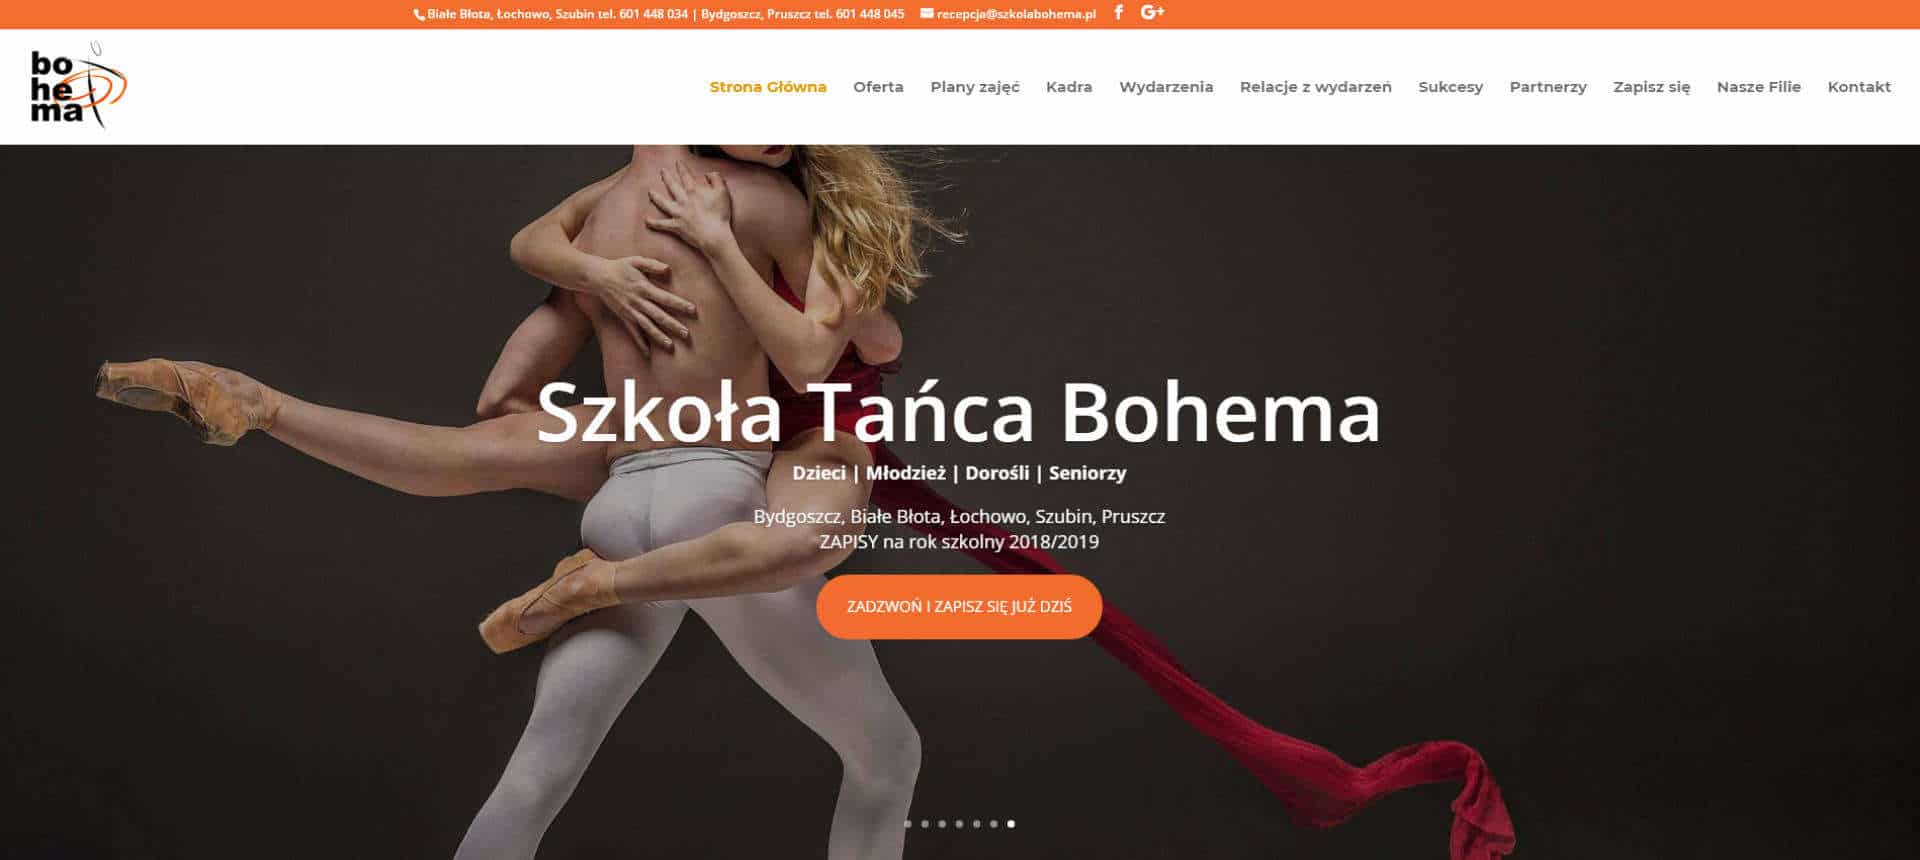 Strona internetowa dla szkoły Tańca Bohema